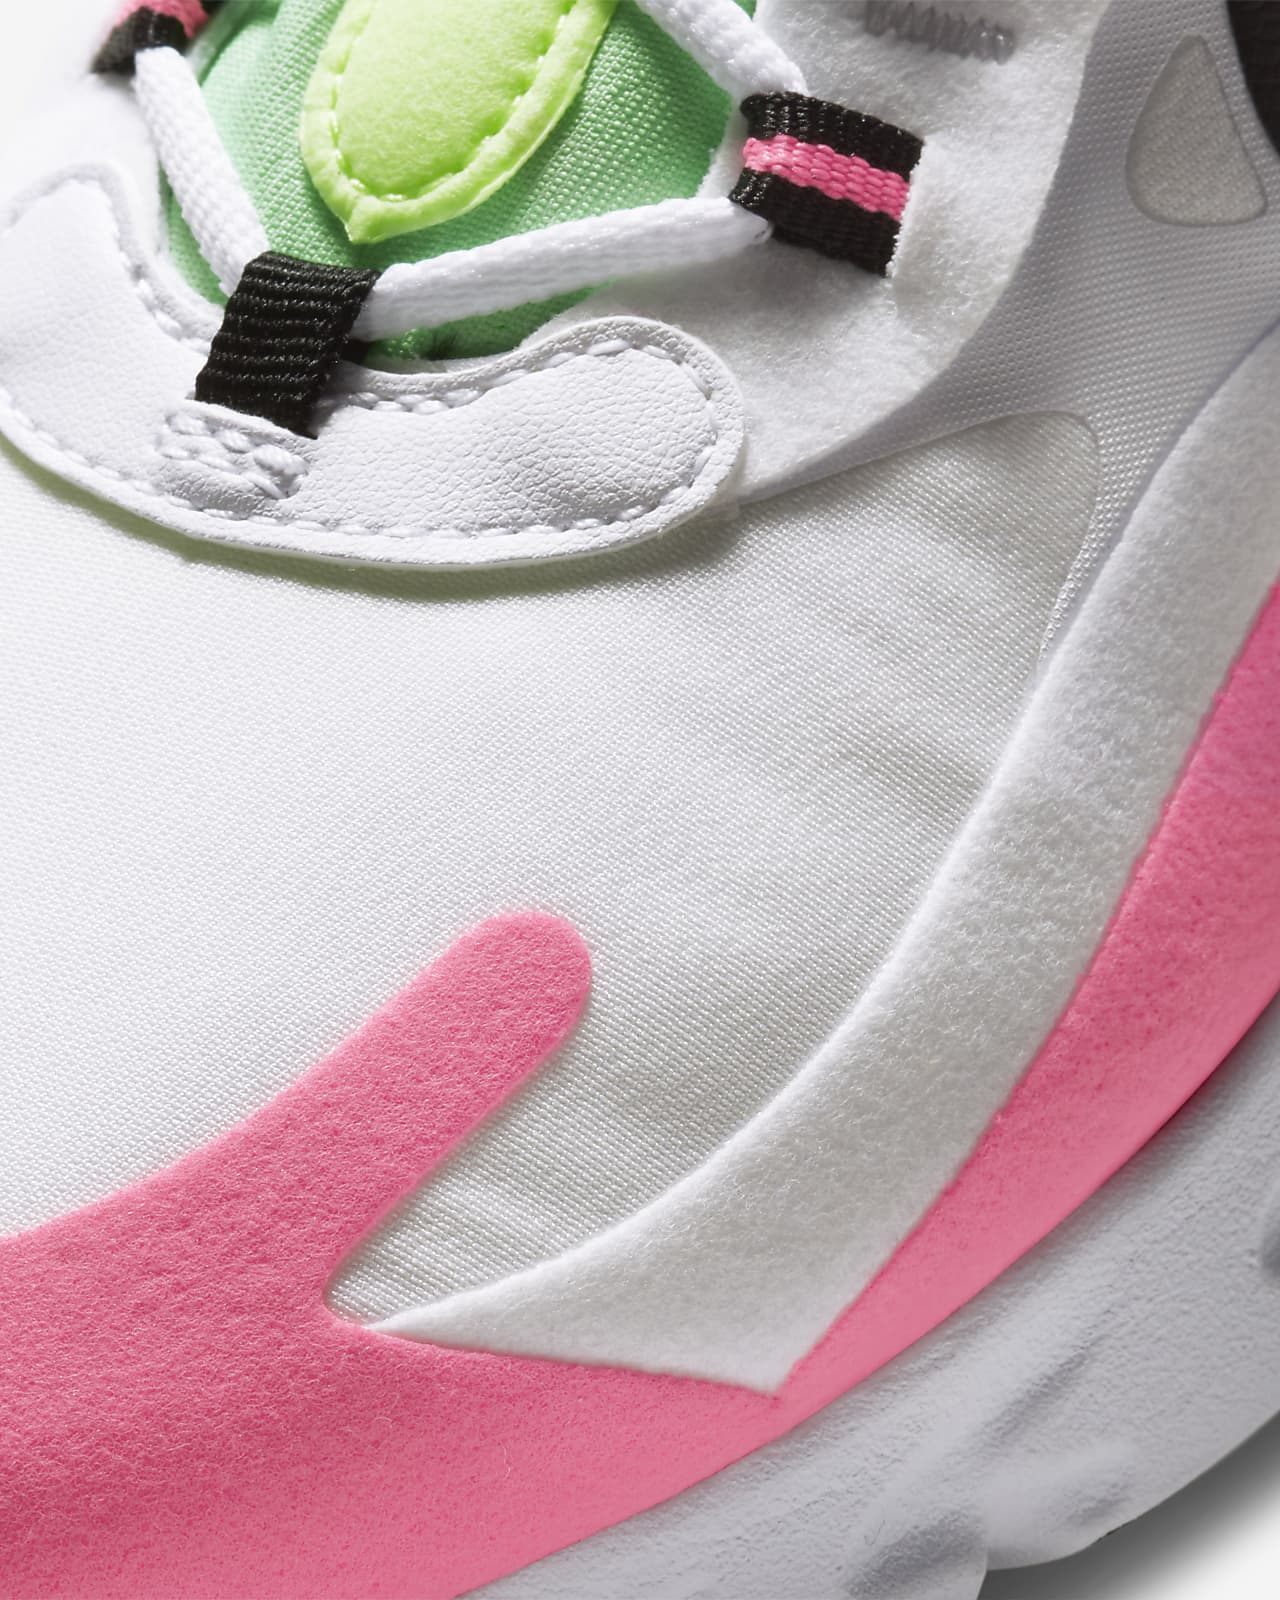 Nike Air Max 270 React Women's Shoes White/Hyper Pink/Black CJ0619-101 Size  11